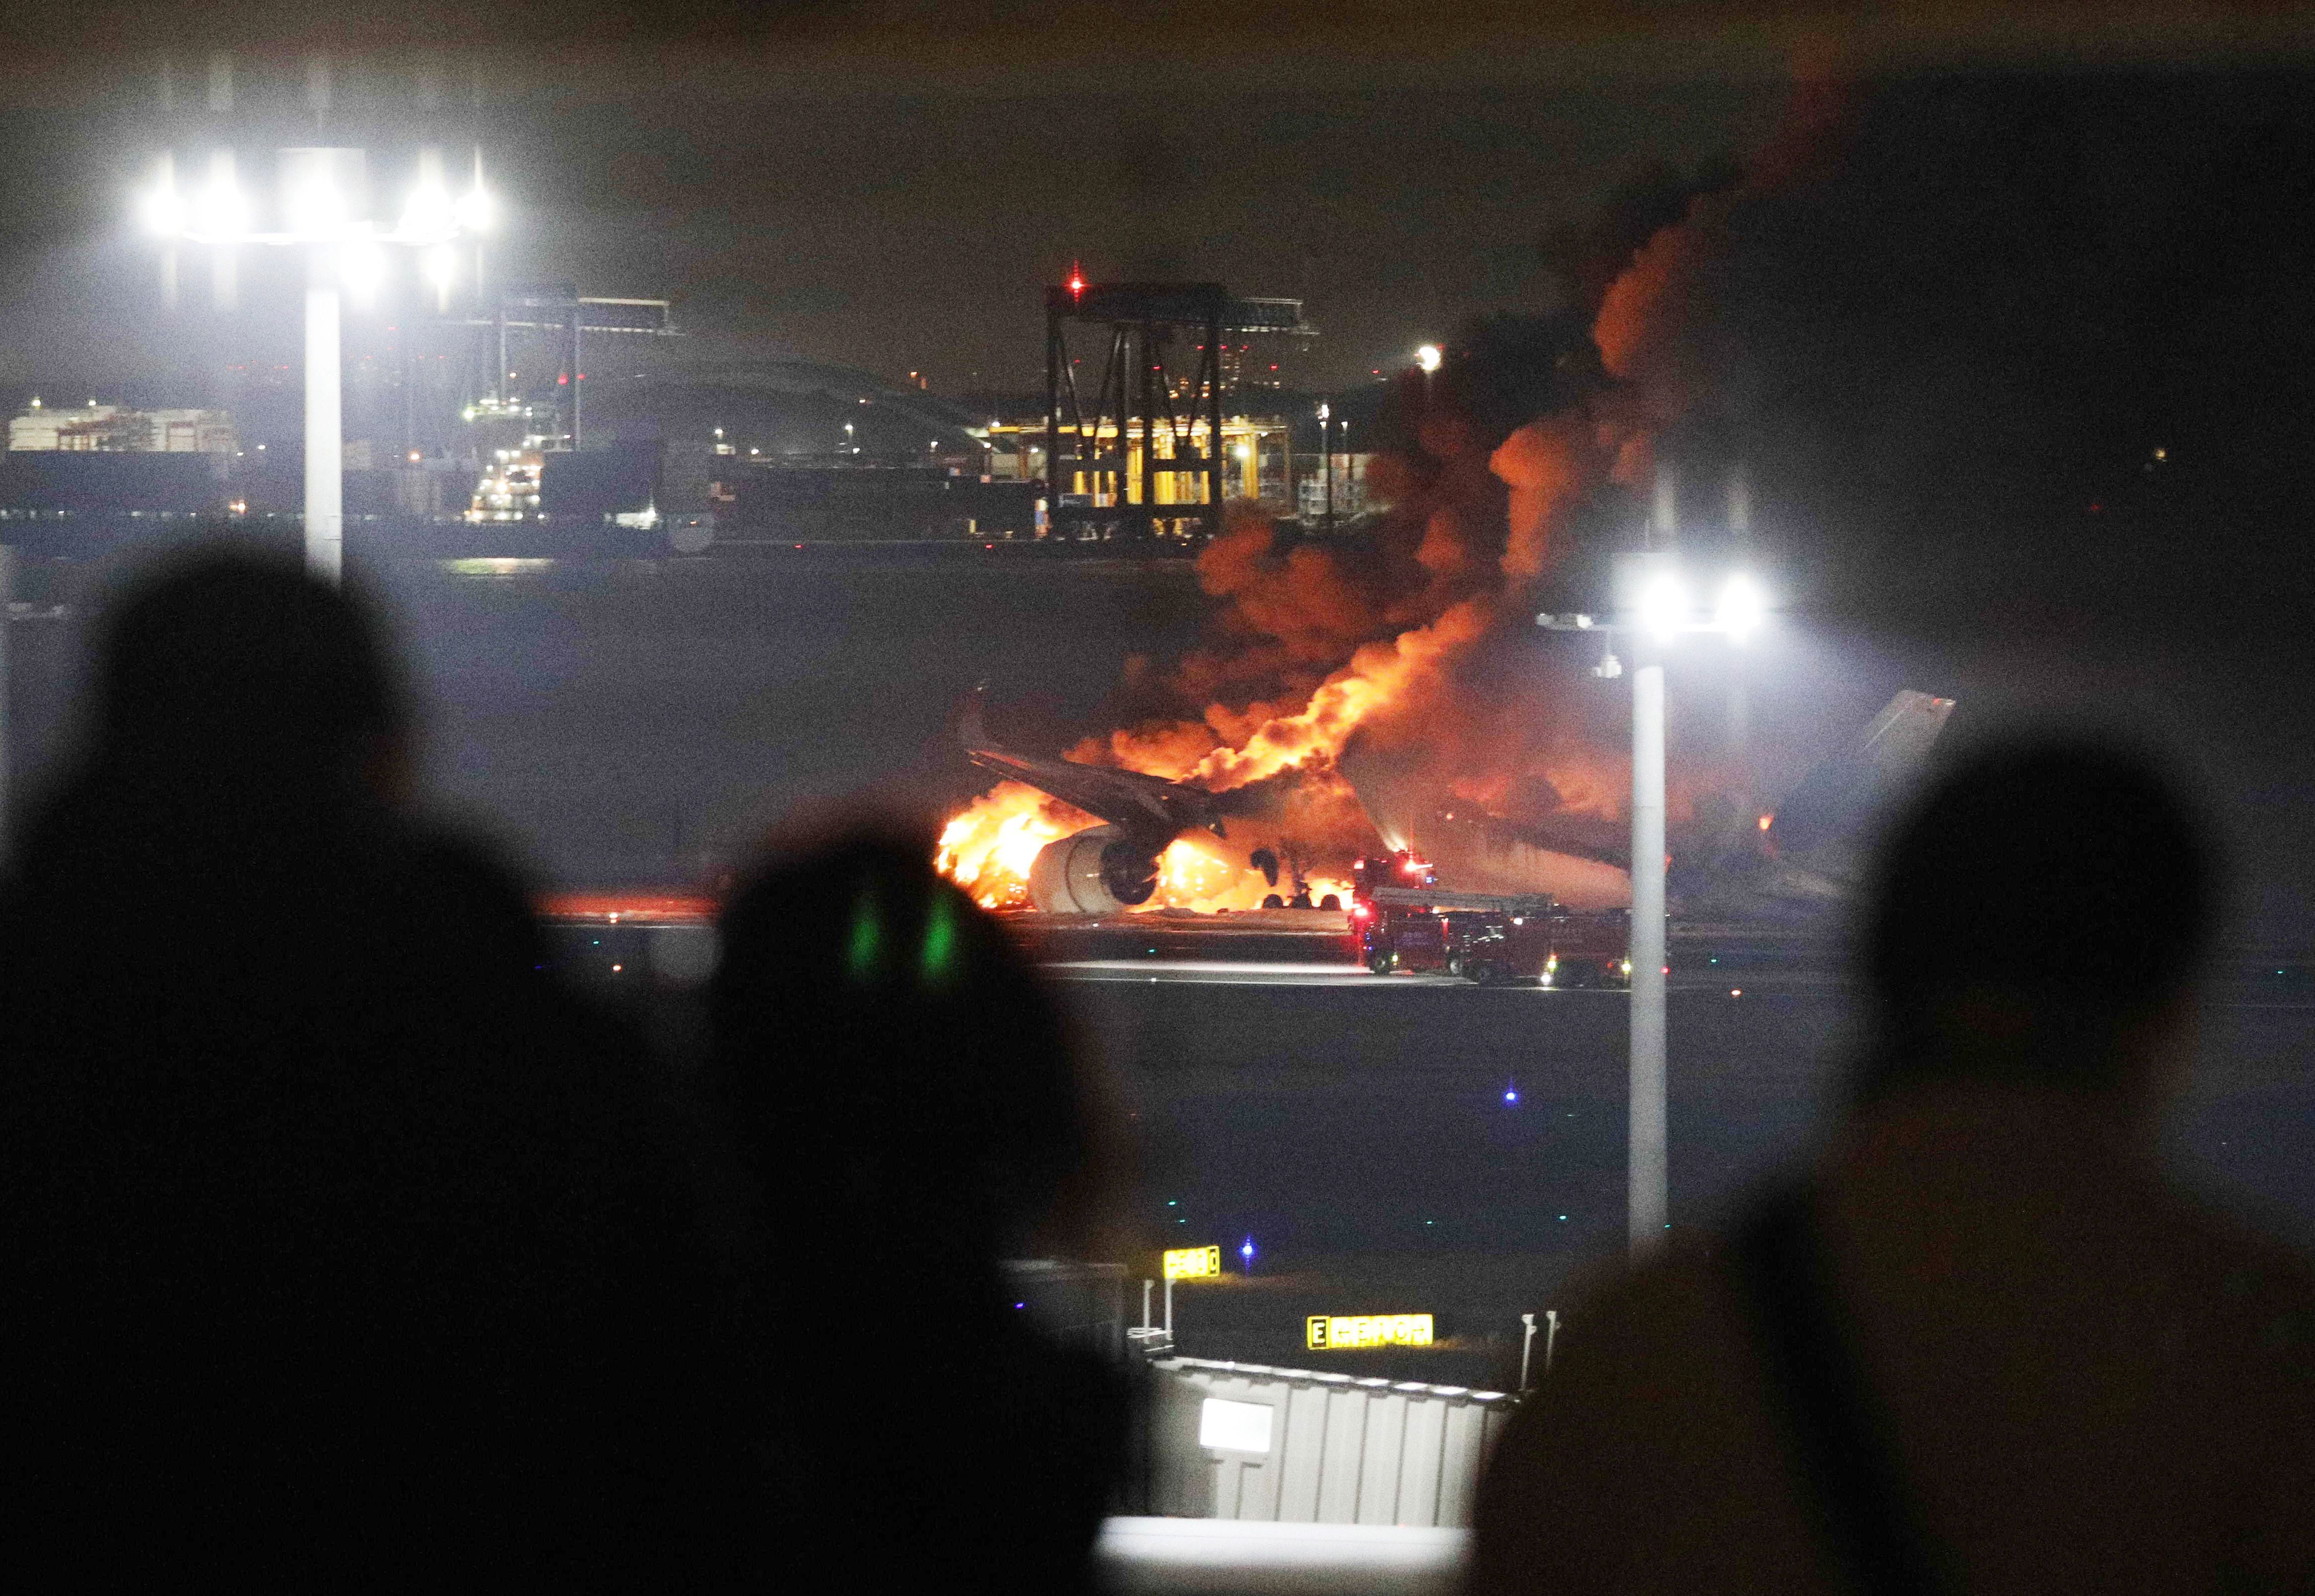 “Seguir instrucciones fue clave para sobrevivir”: pasajero del avión incendiado en Japón